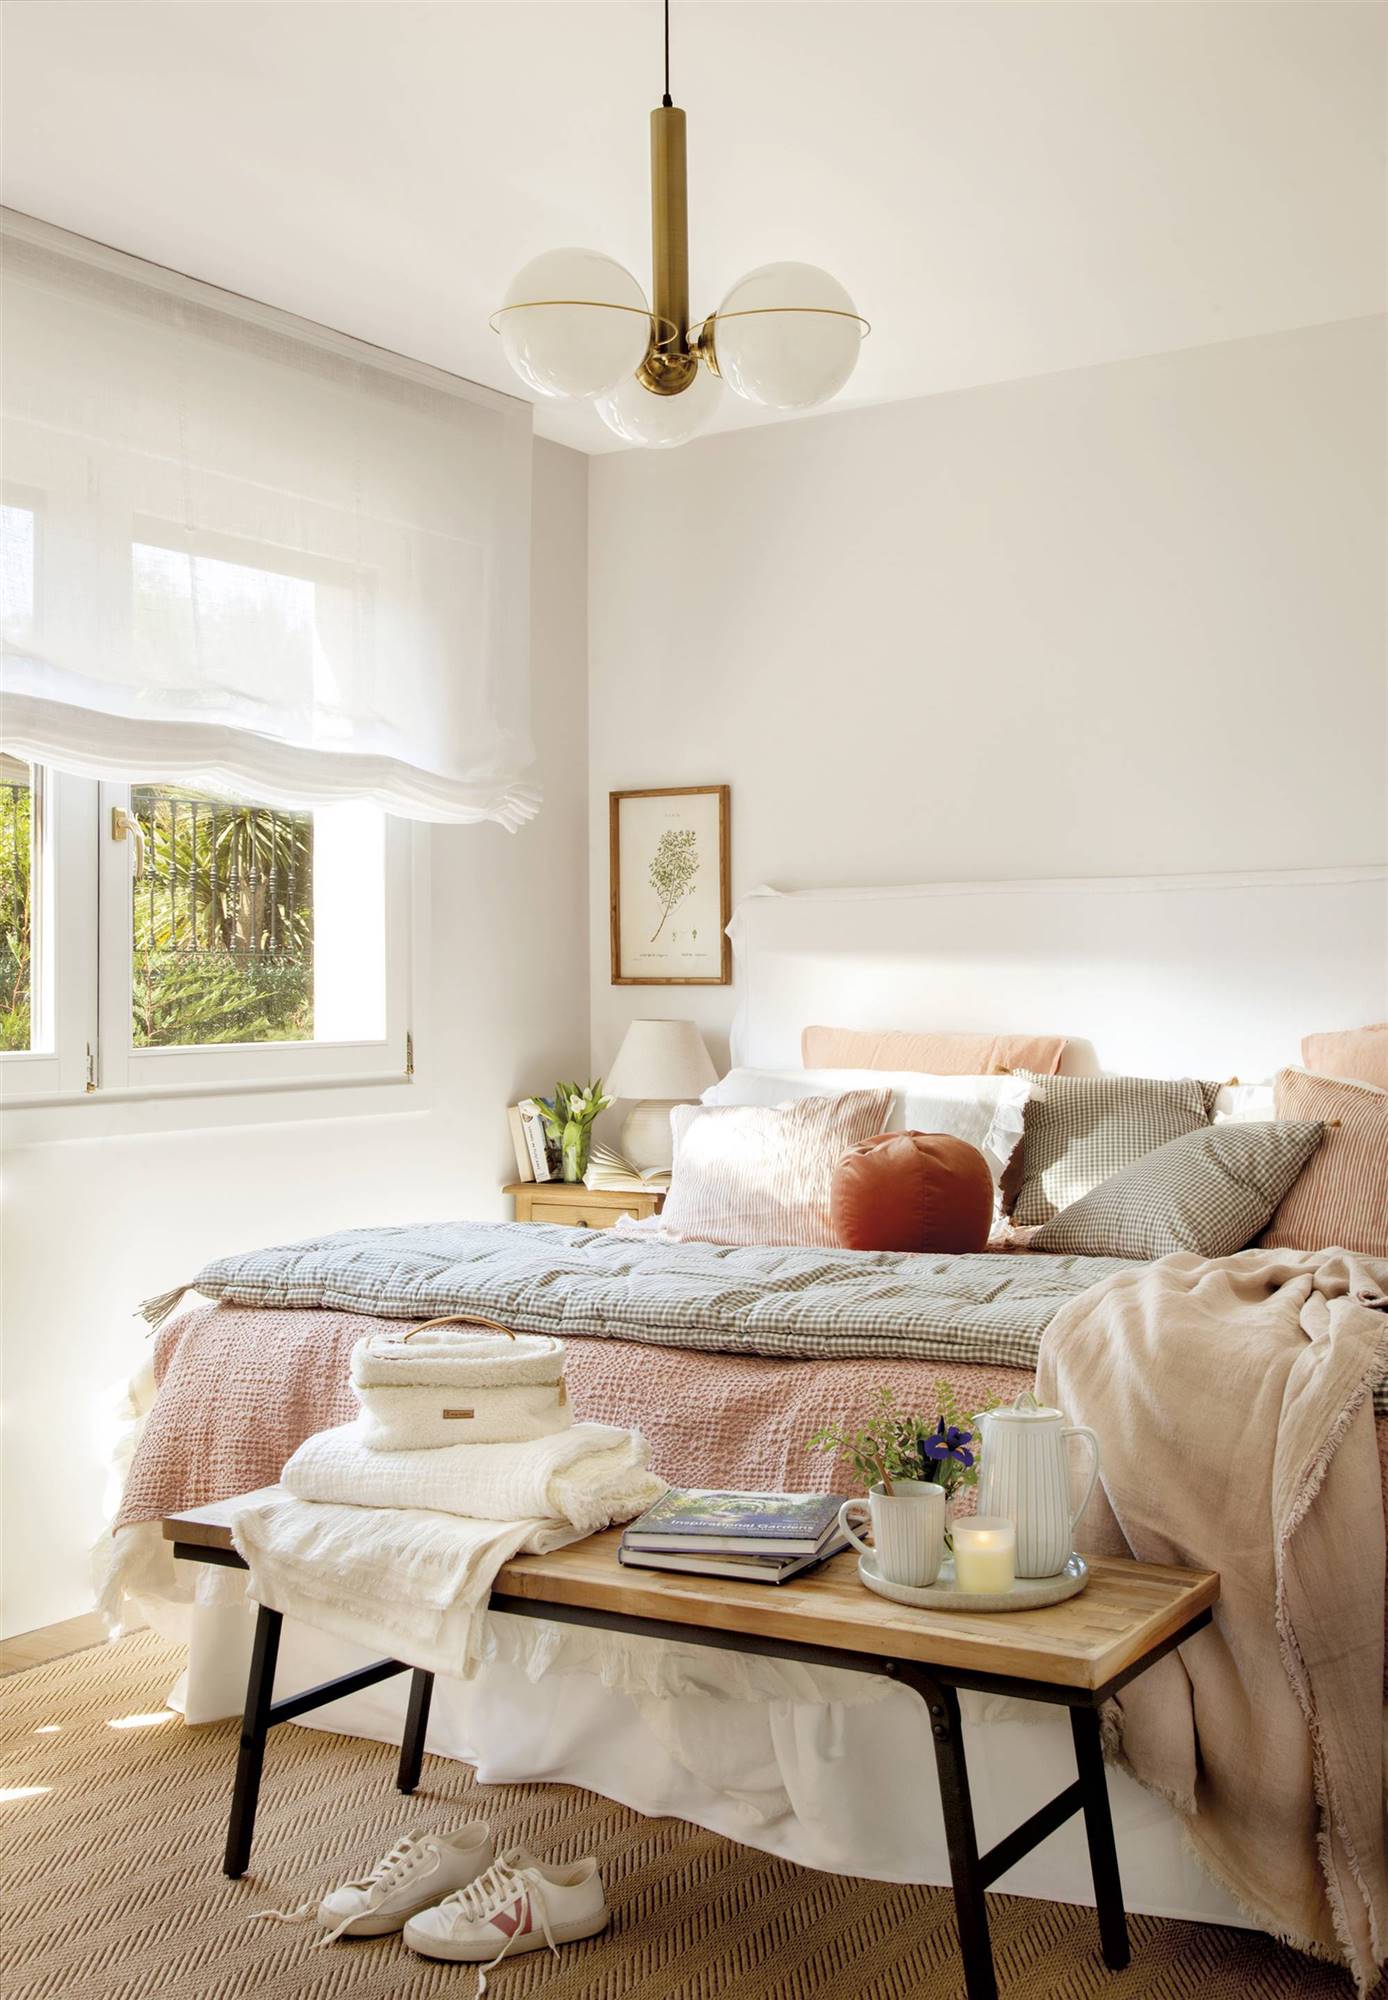 Dormitorio con cama de color blanco, estores blancos, lámpara de techo con bolas, ropa de cama en tonos rosados y banco a los pies